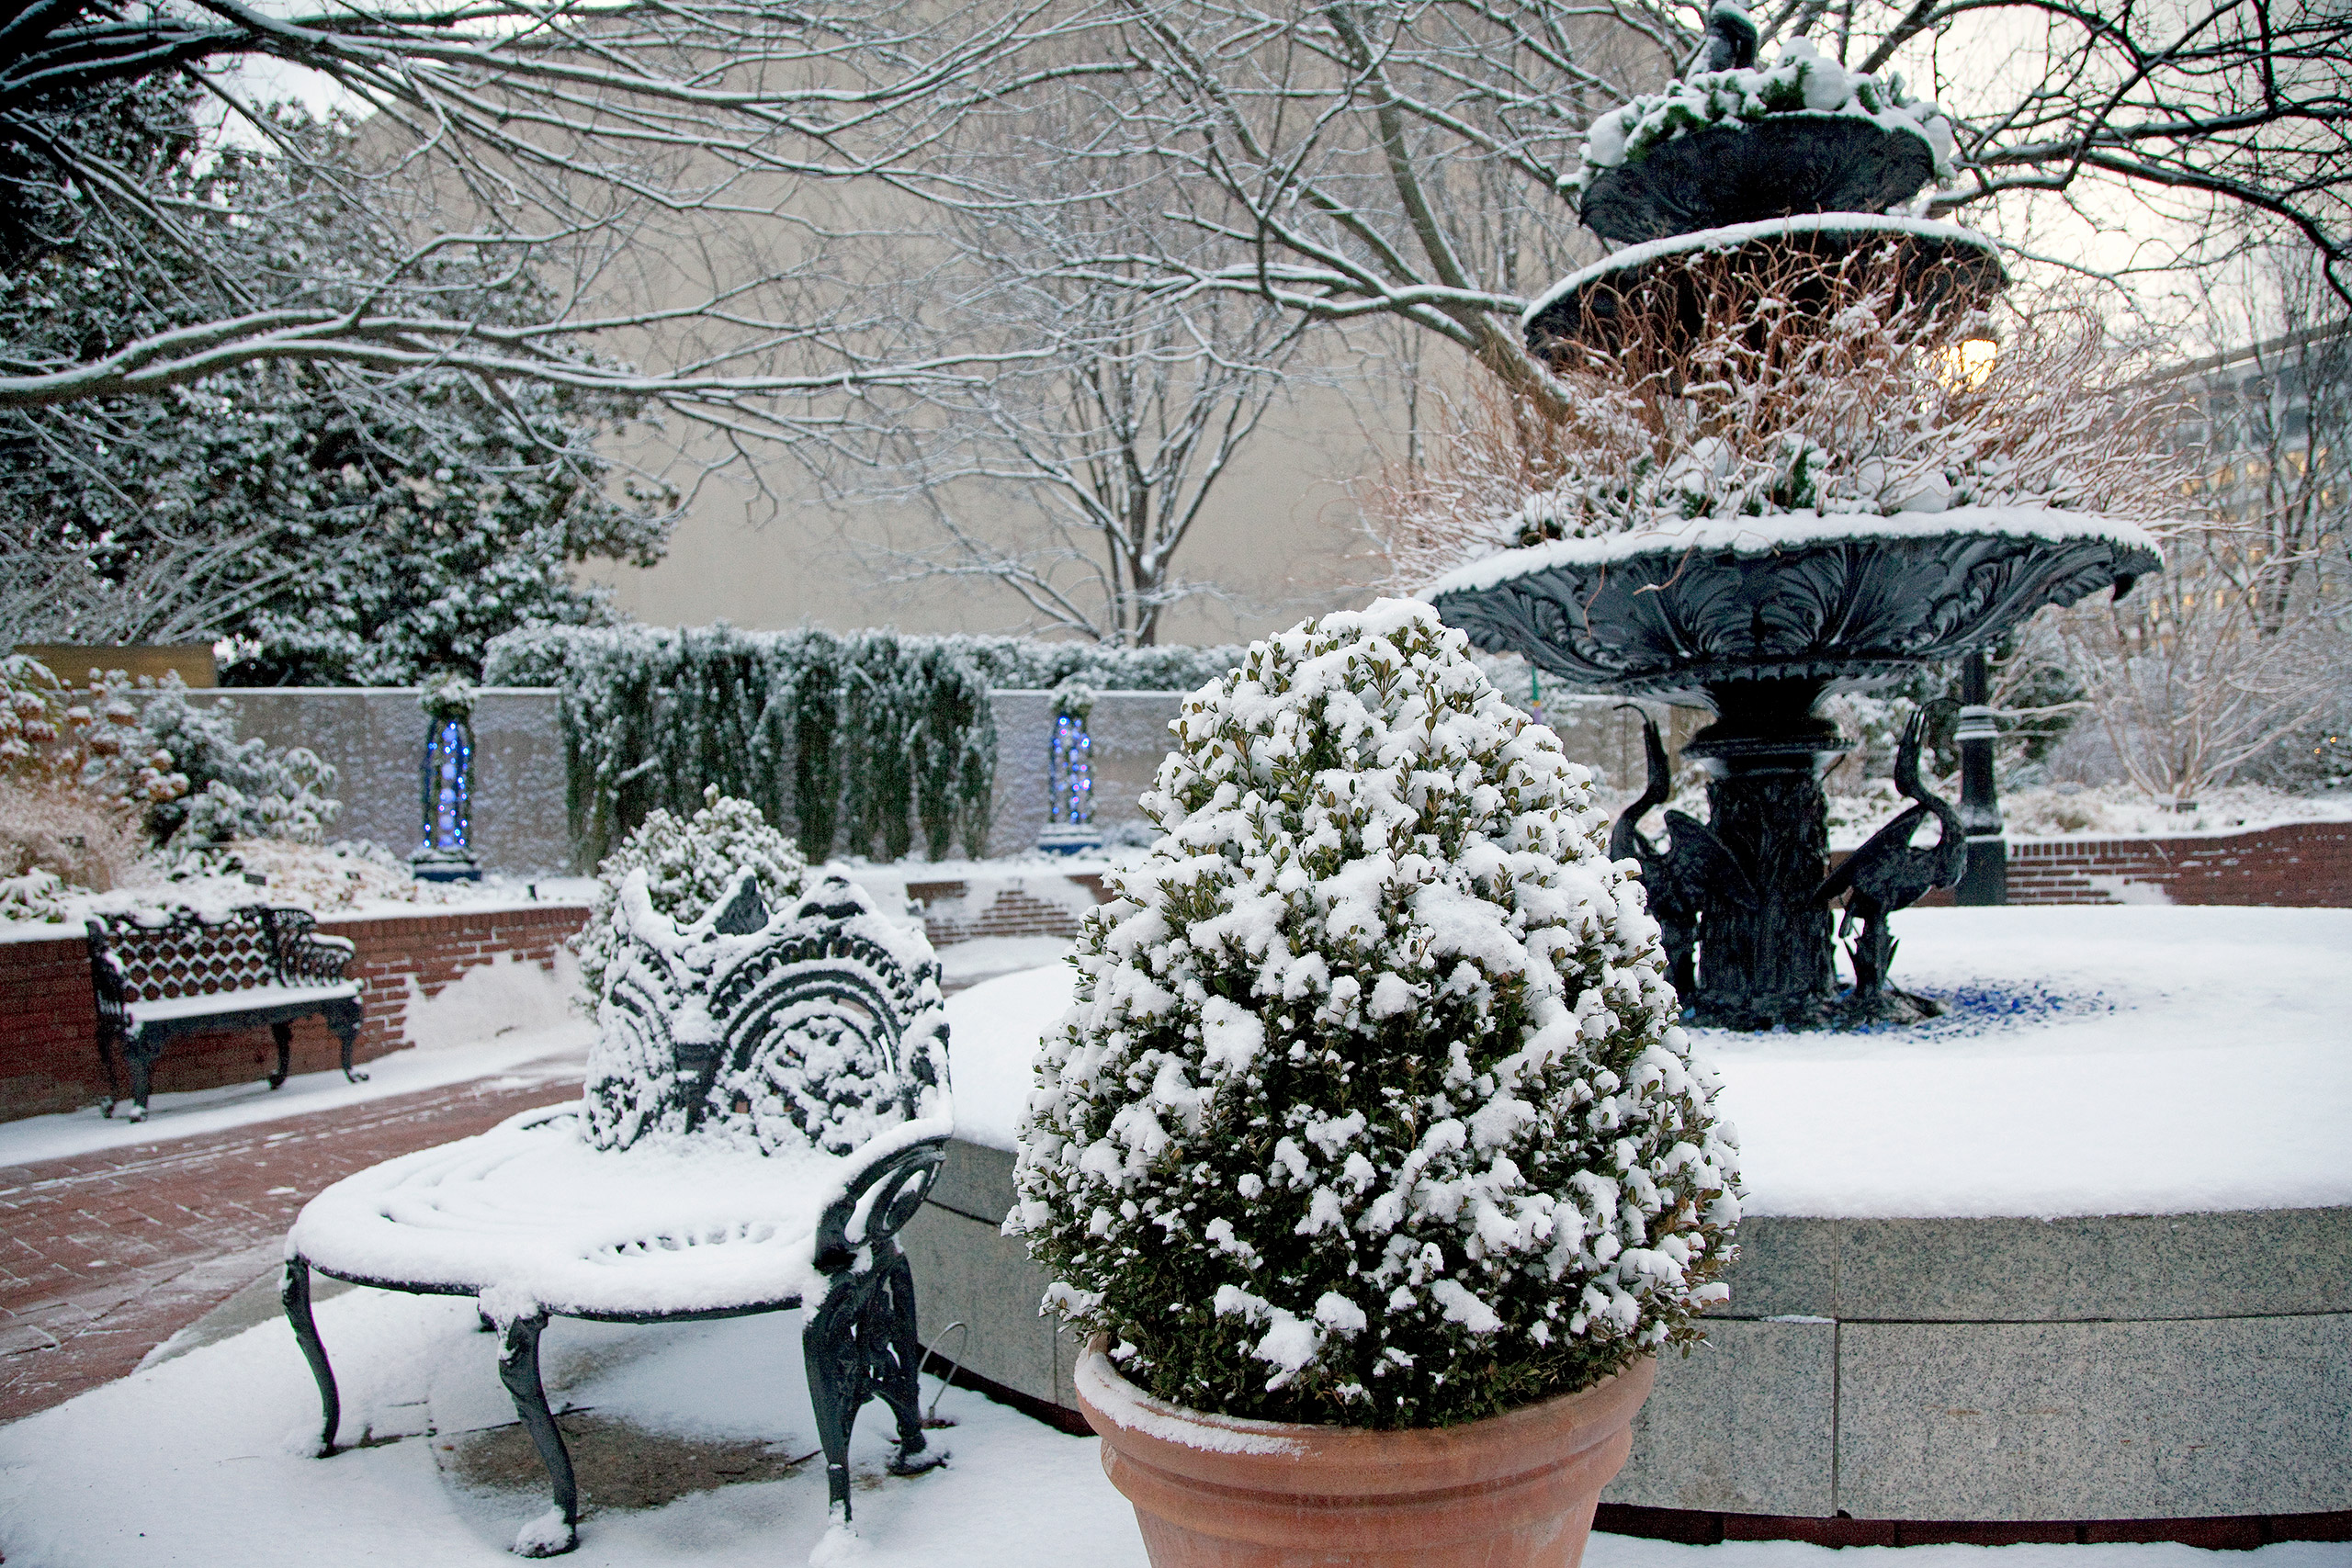 Winter Interest in the Garden - Smithsonian Gardens